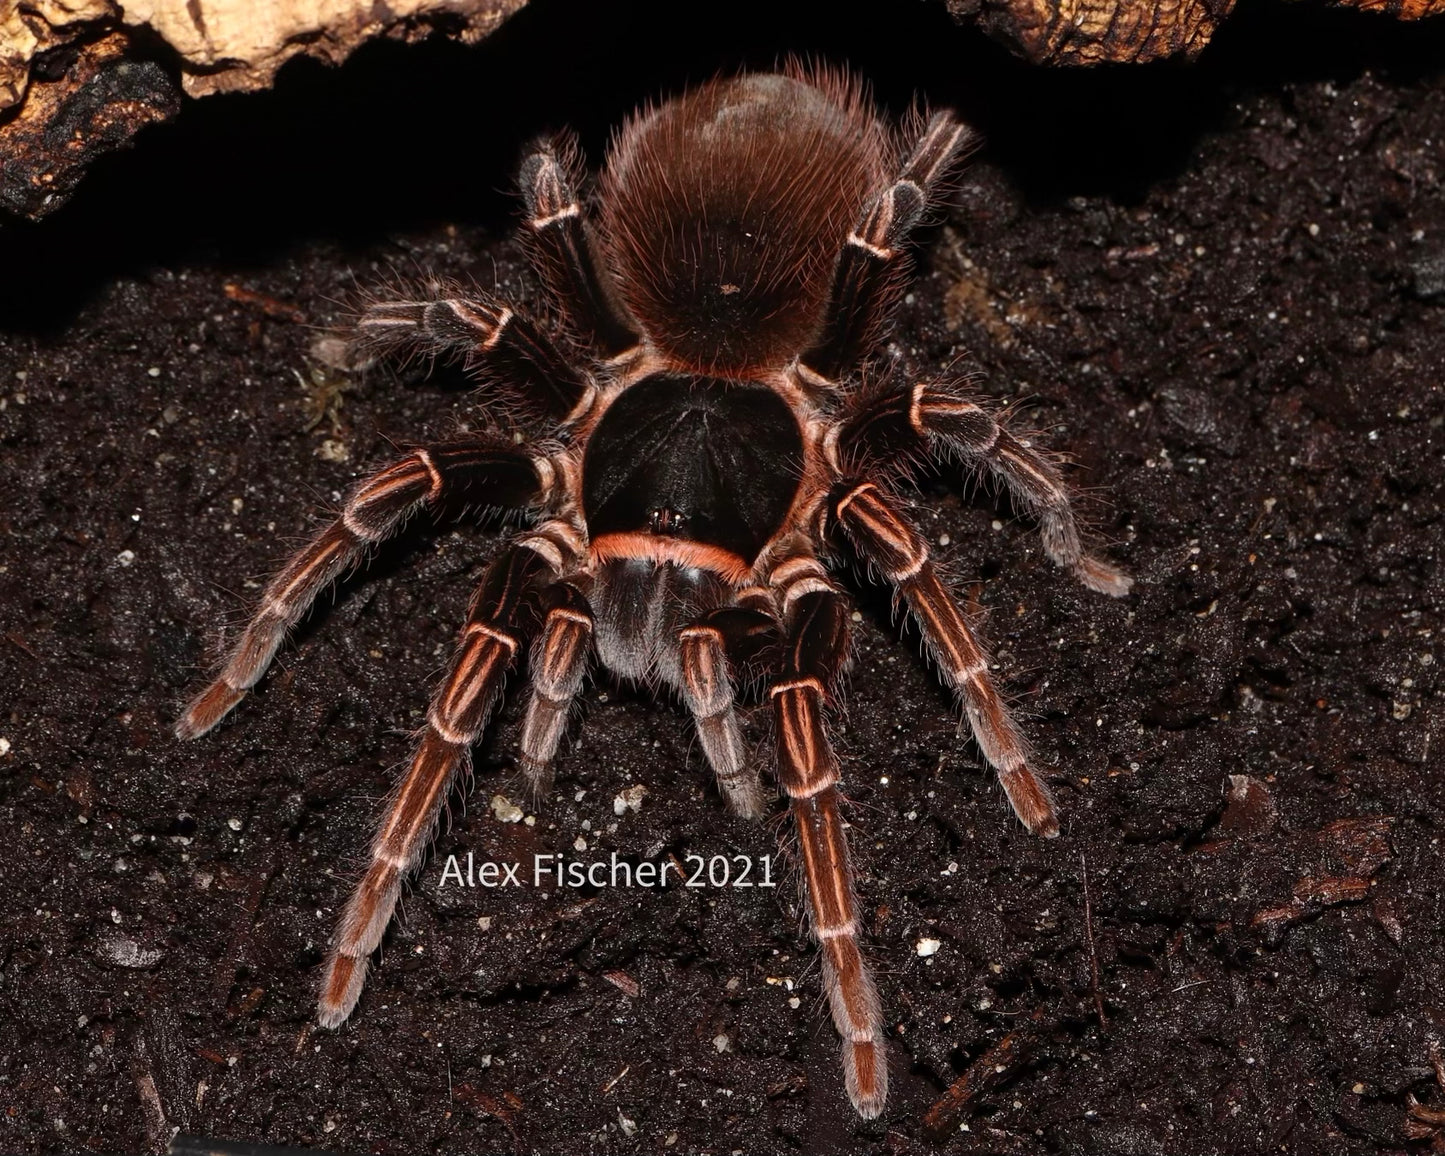 Acanthoscurria simoensi (Manaus black and gold tarantula) 0.5"